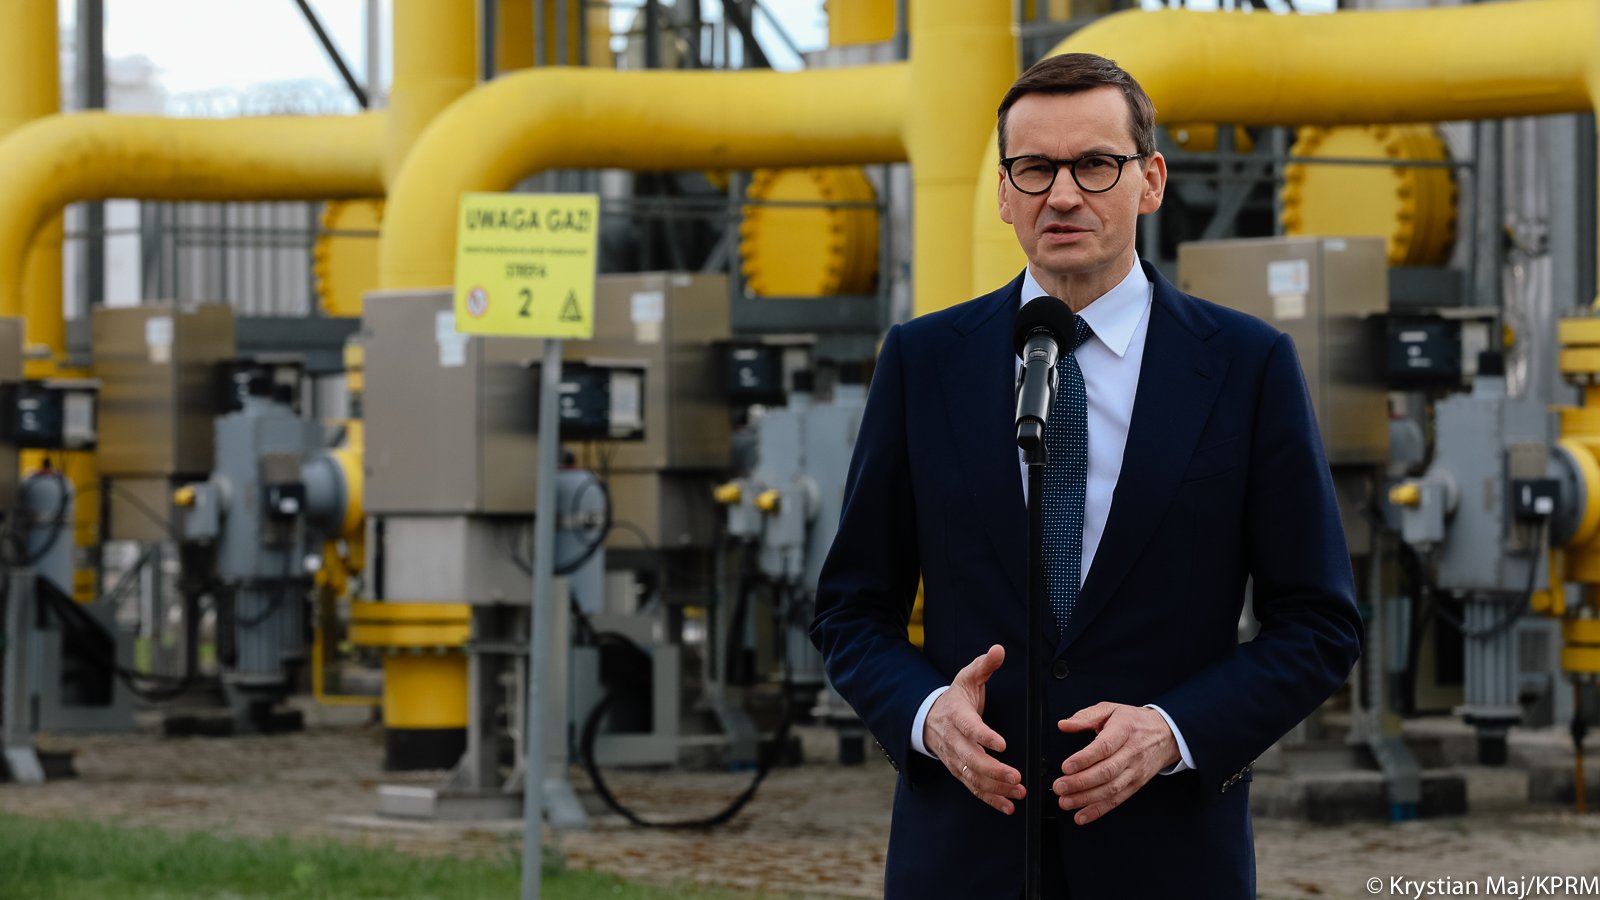 Szef rządu podczas wizyty w oddziale firmy Gaz-System w Rembelszczyźnie, zapewniał, że dostawy gazu w Polsce nie są zagrożone. źródło: https://twitter.com/PremierRP